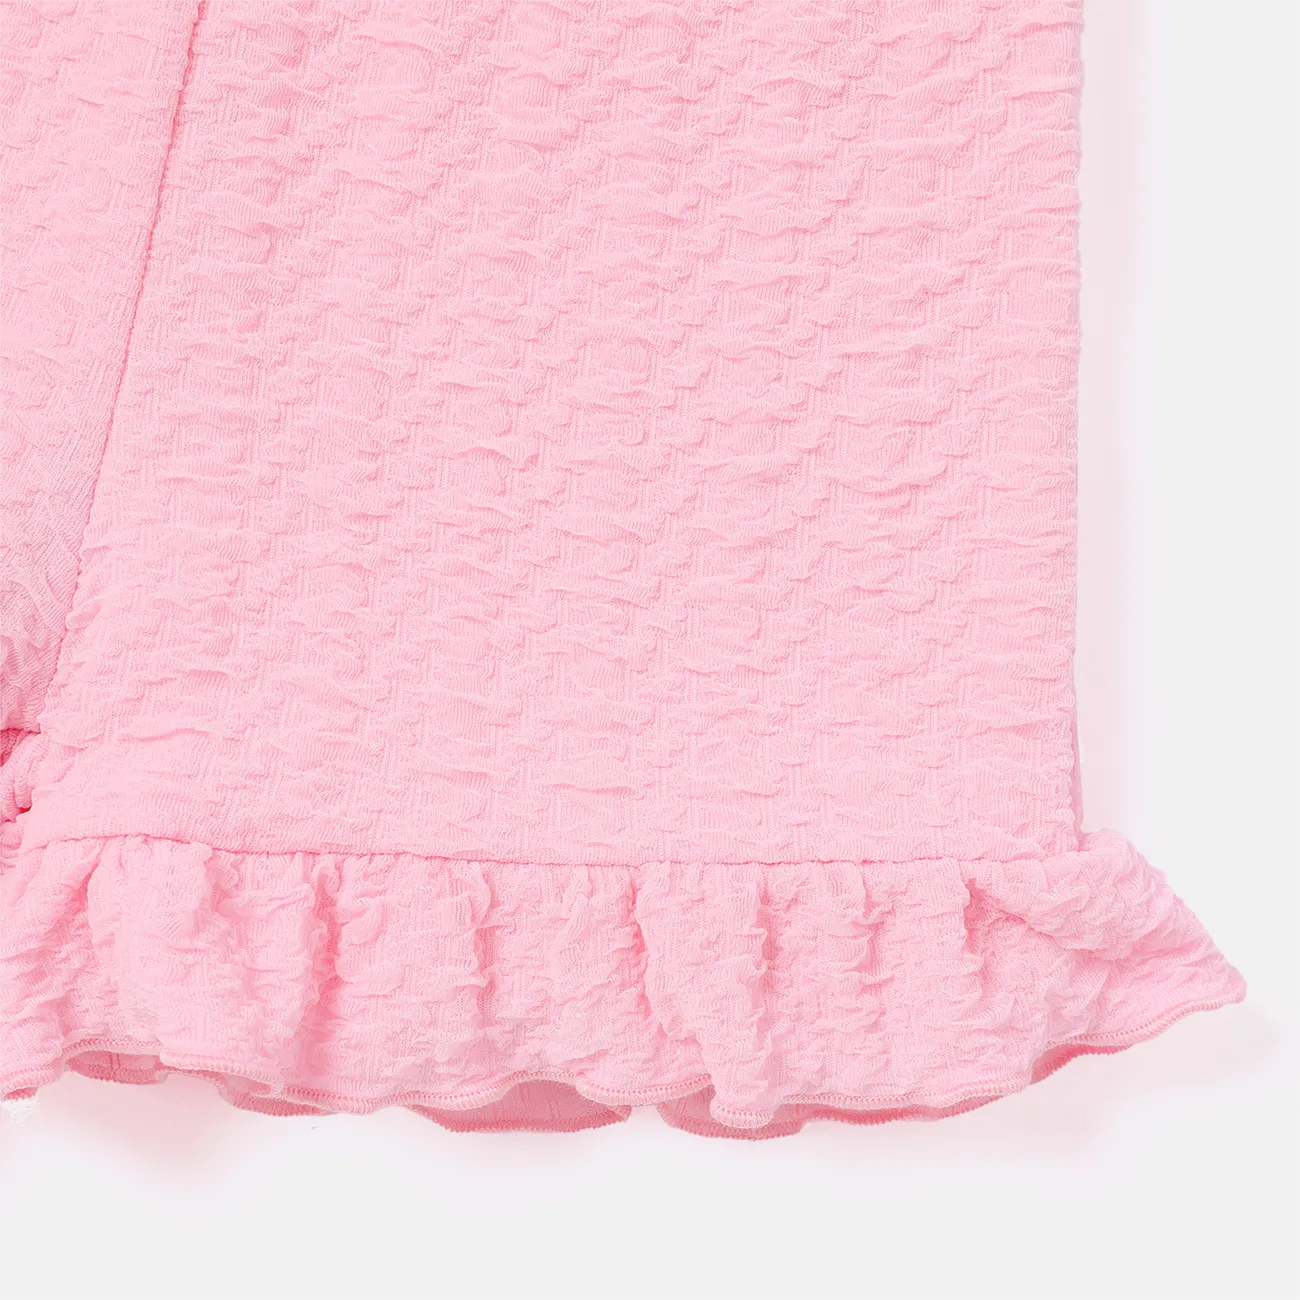 Toddler Girl Solid Color Bowknot Design Elasticized Shorts Pink big image 1